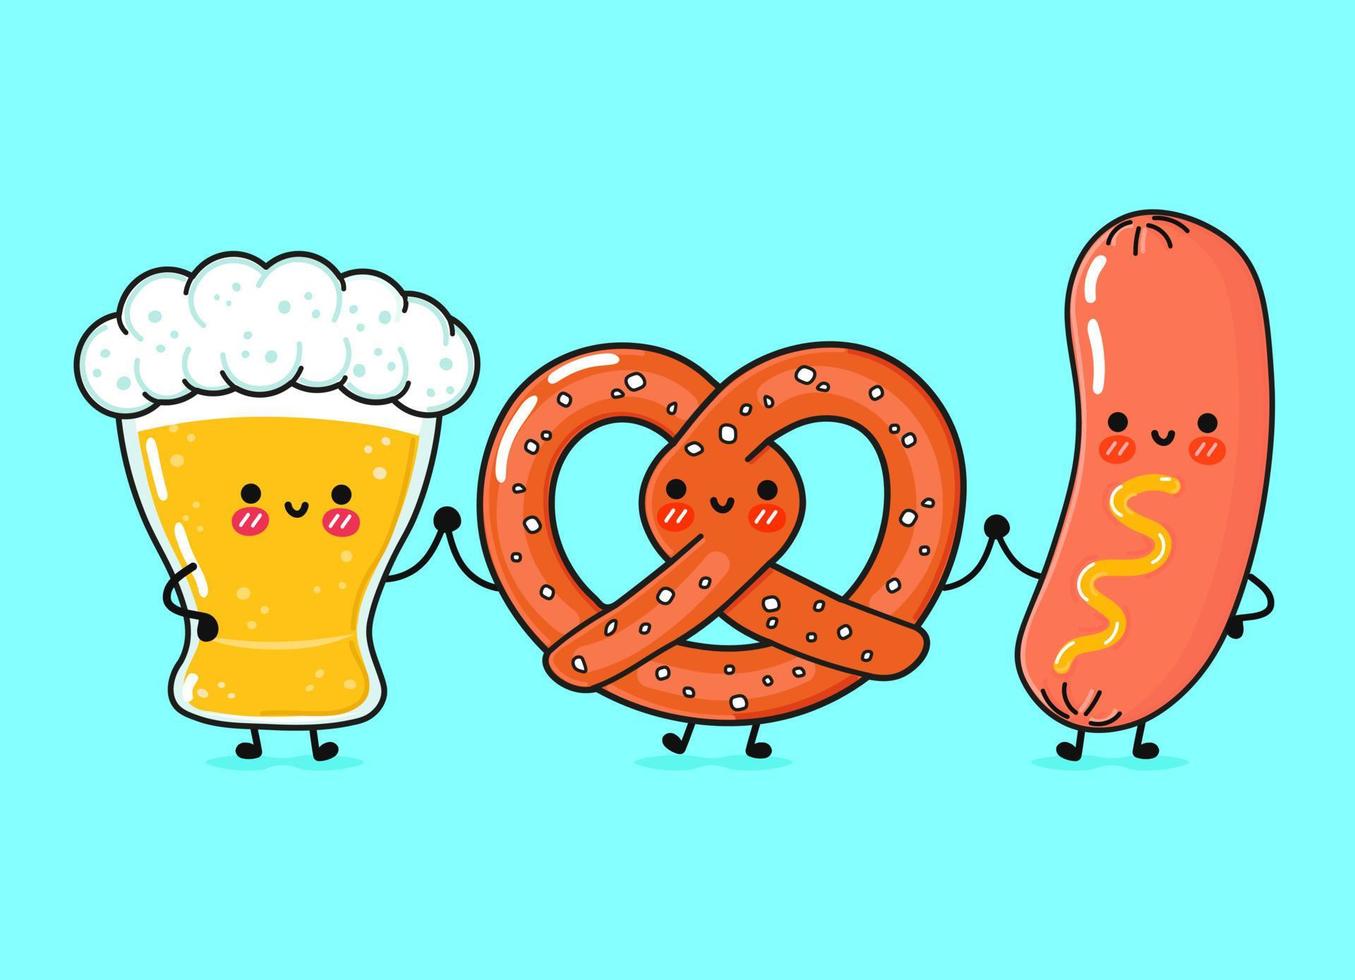 lindo, divertido y feliz vaso de cerveza, pretzel y salchicha con mostaza. personajes de kawaii de dibujos animados dibujados a mano vectorial, ilustración. divertidos dibujos animados vaso de cerveza, pretzel y salchicha mostaza amigos mascota vector